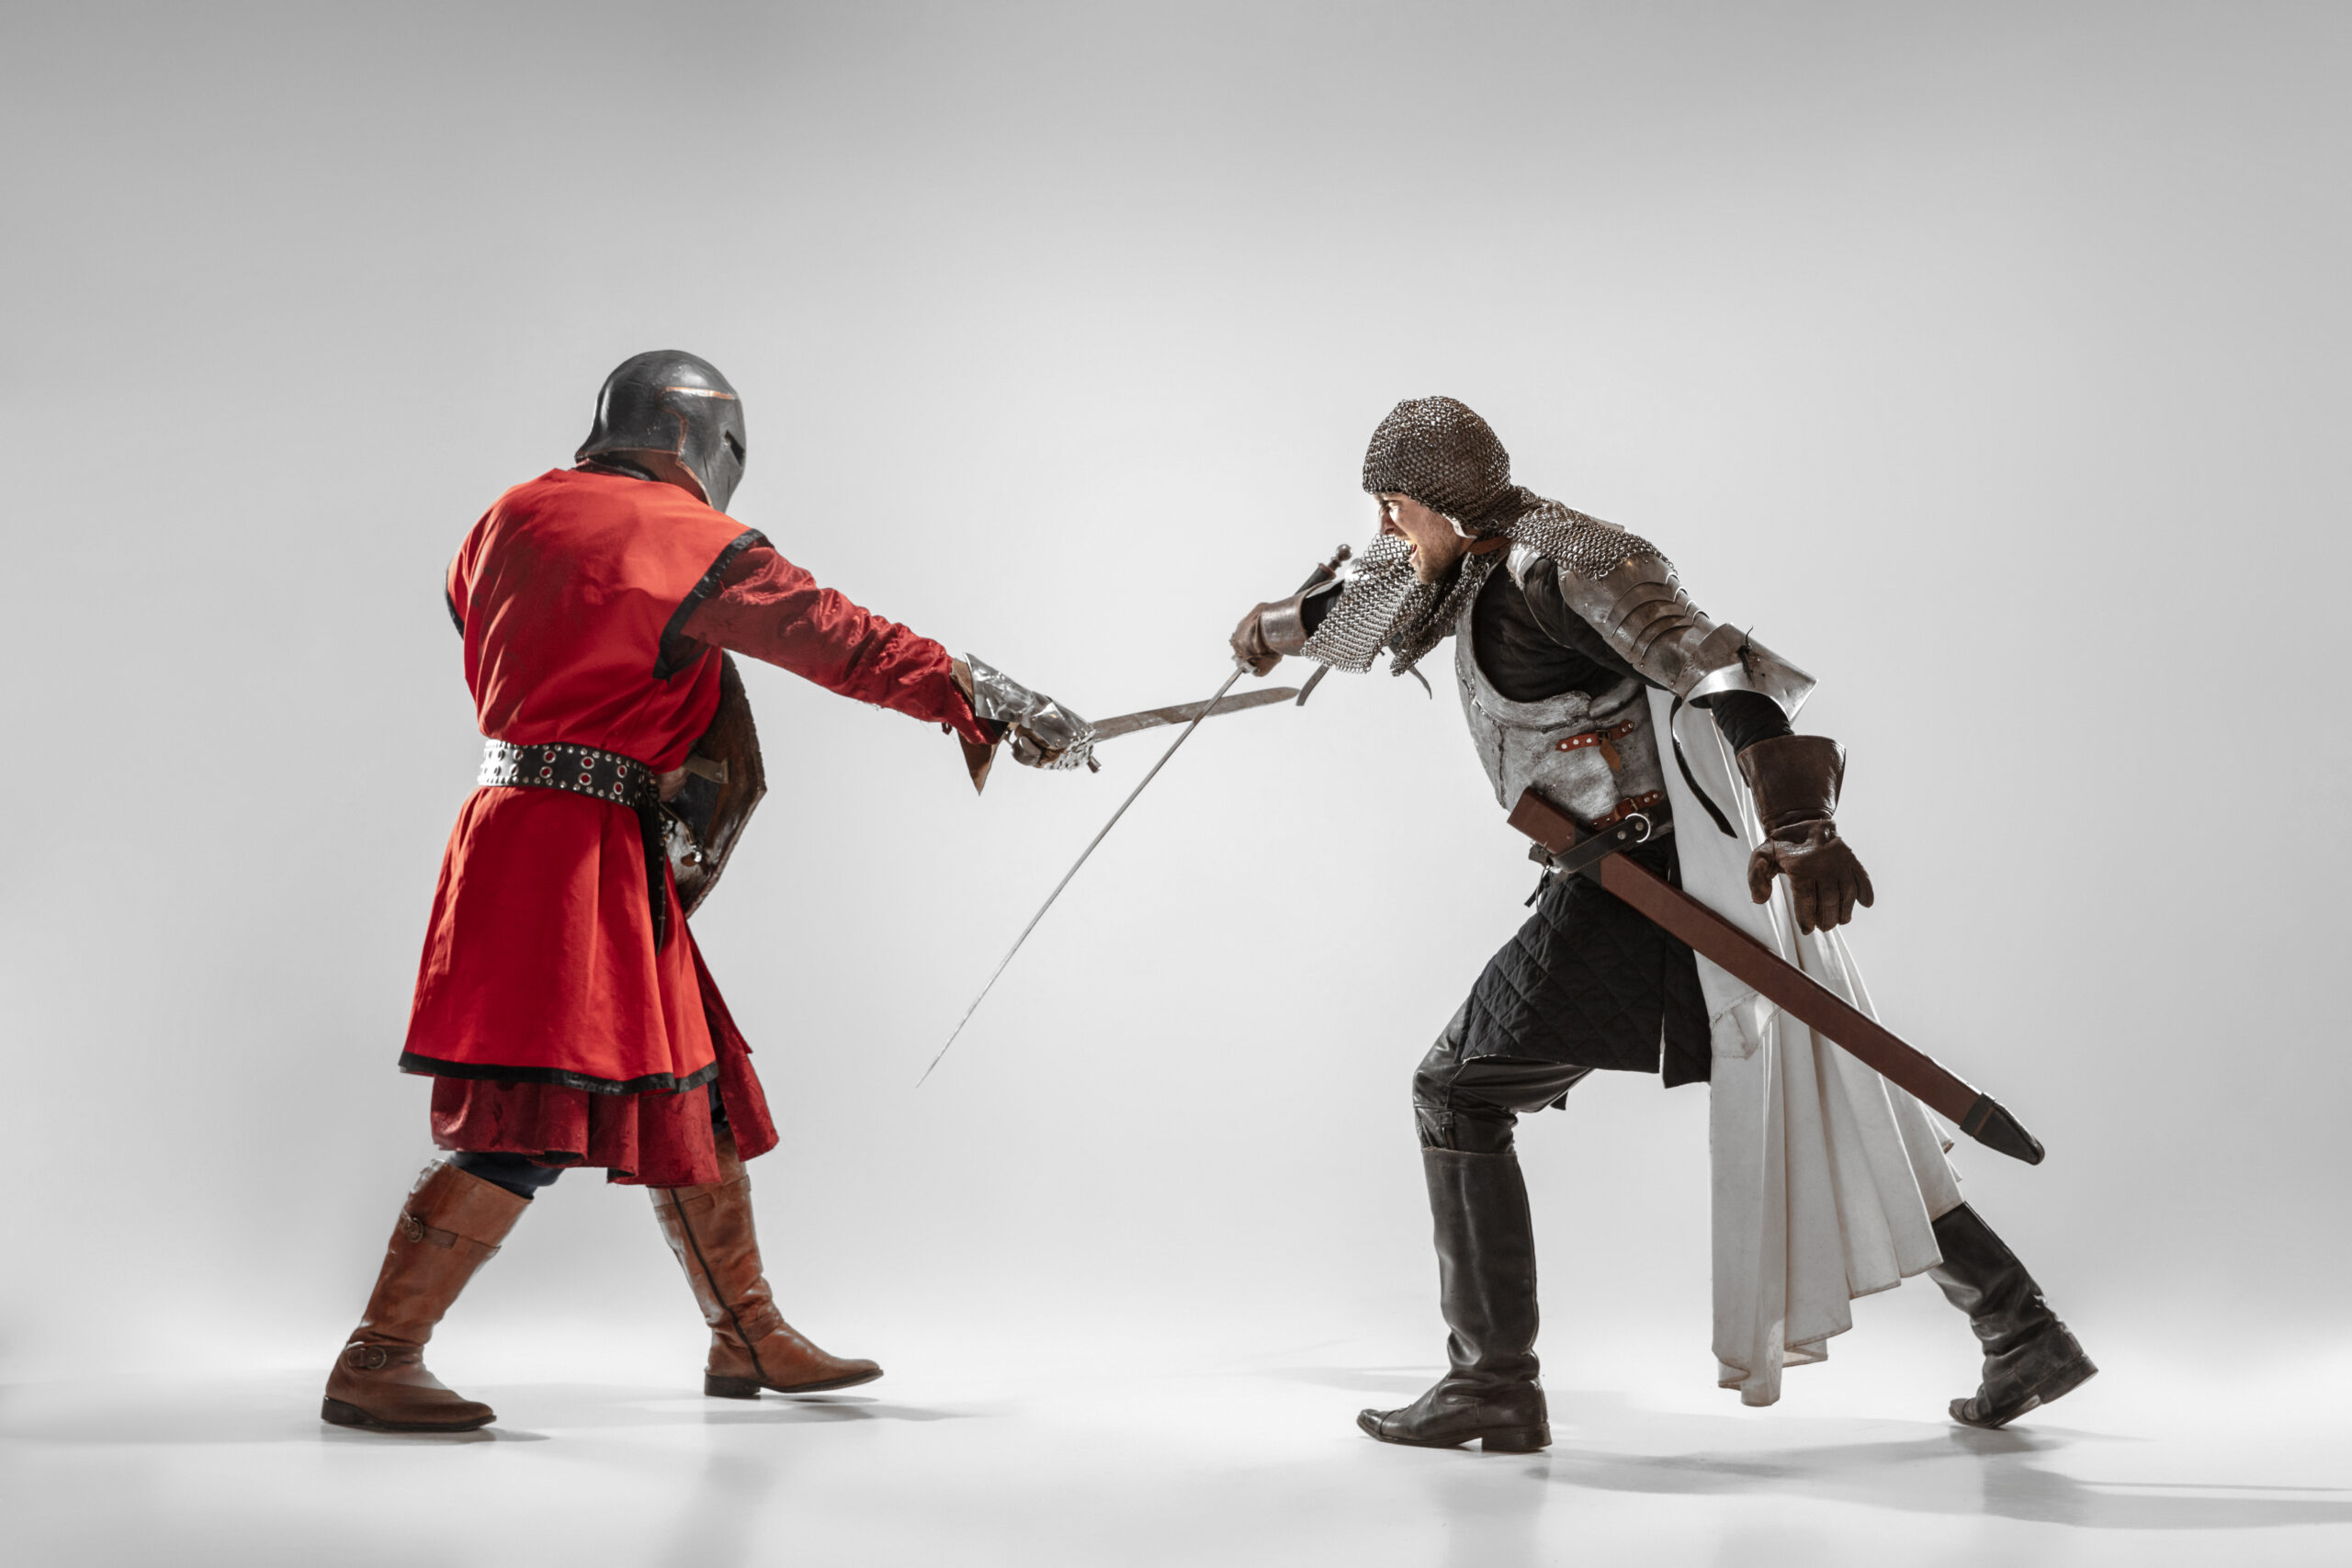 2 chevaliers en train de se battre à l'épée